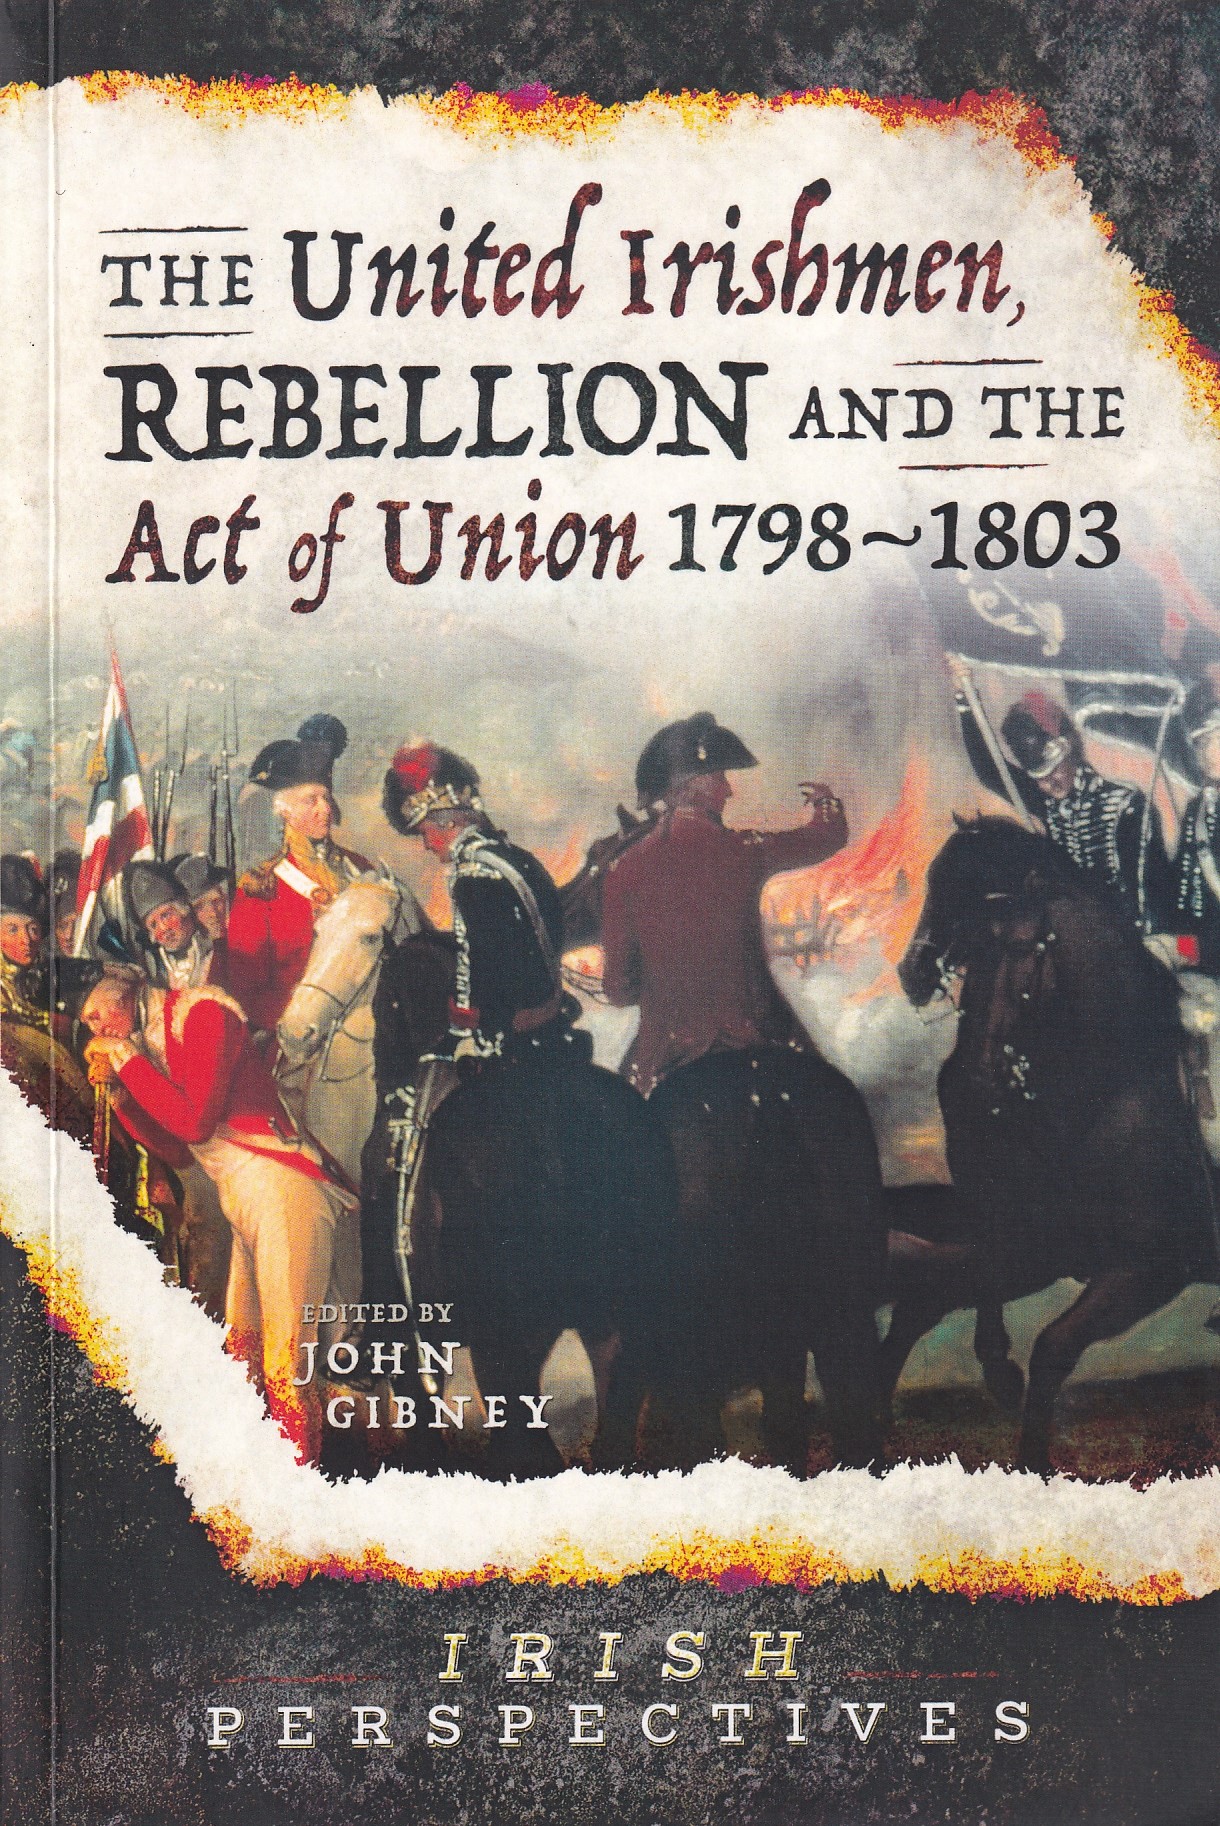 The United Irishmen, Rebellion and the Act of Union, 1798-1803 by John Gibney (ed.)